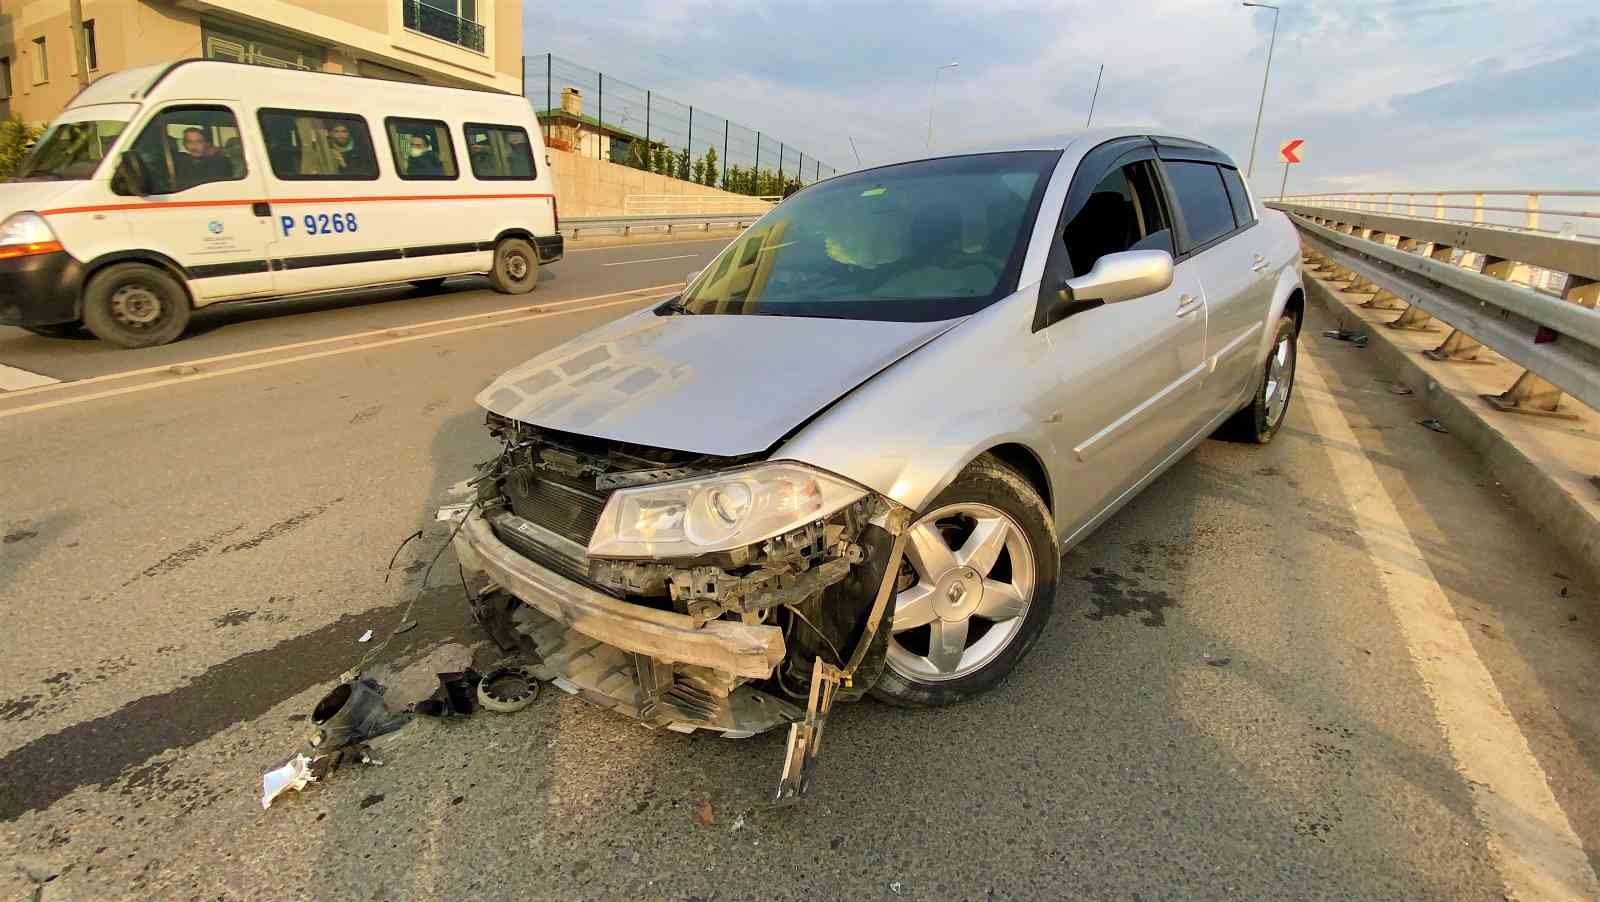 Virajlı yolda kontrolden çıkan otomobil minibüsle çarpıştı: 2 yaralı #kocaeli